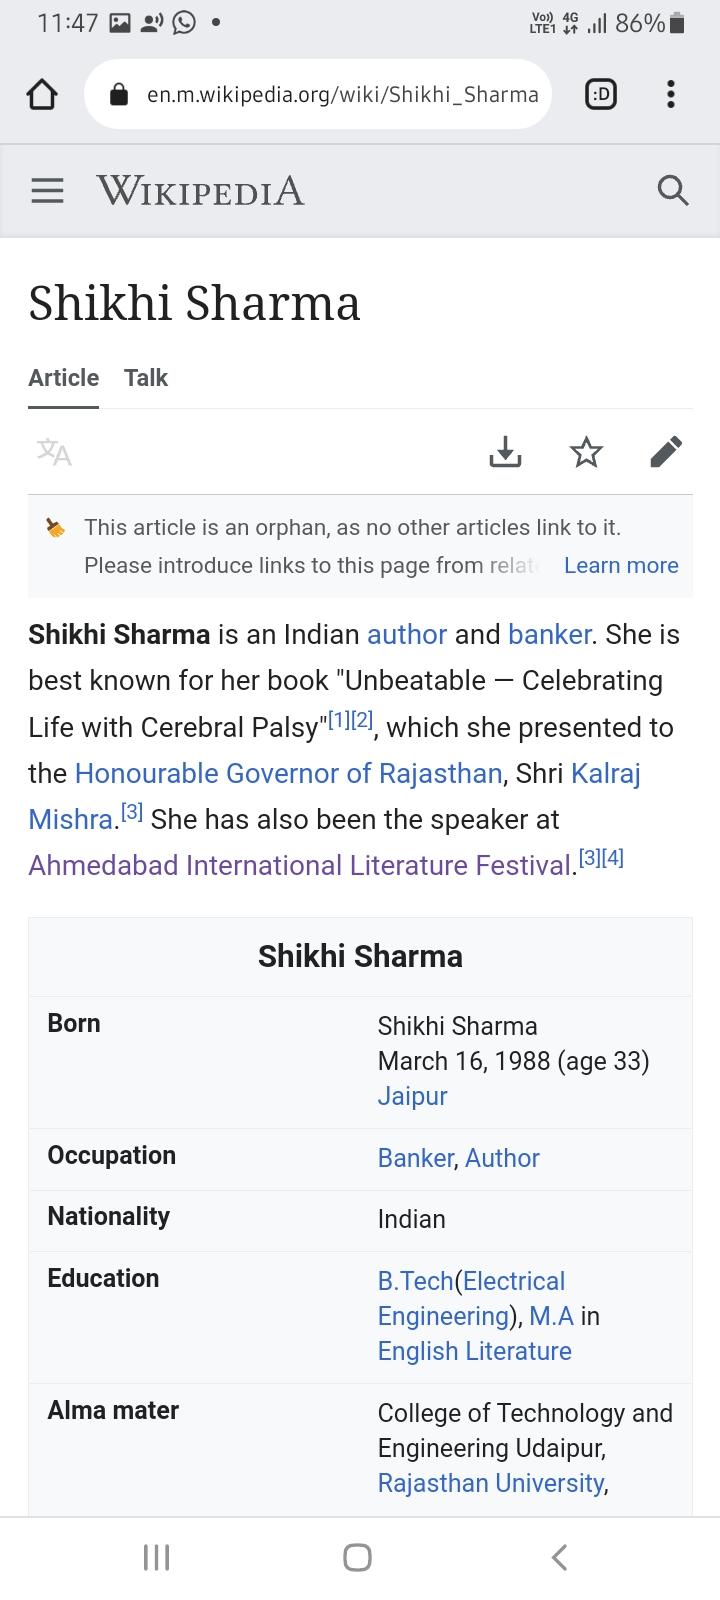 Shikhi Sharma